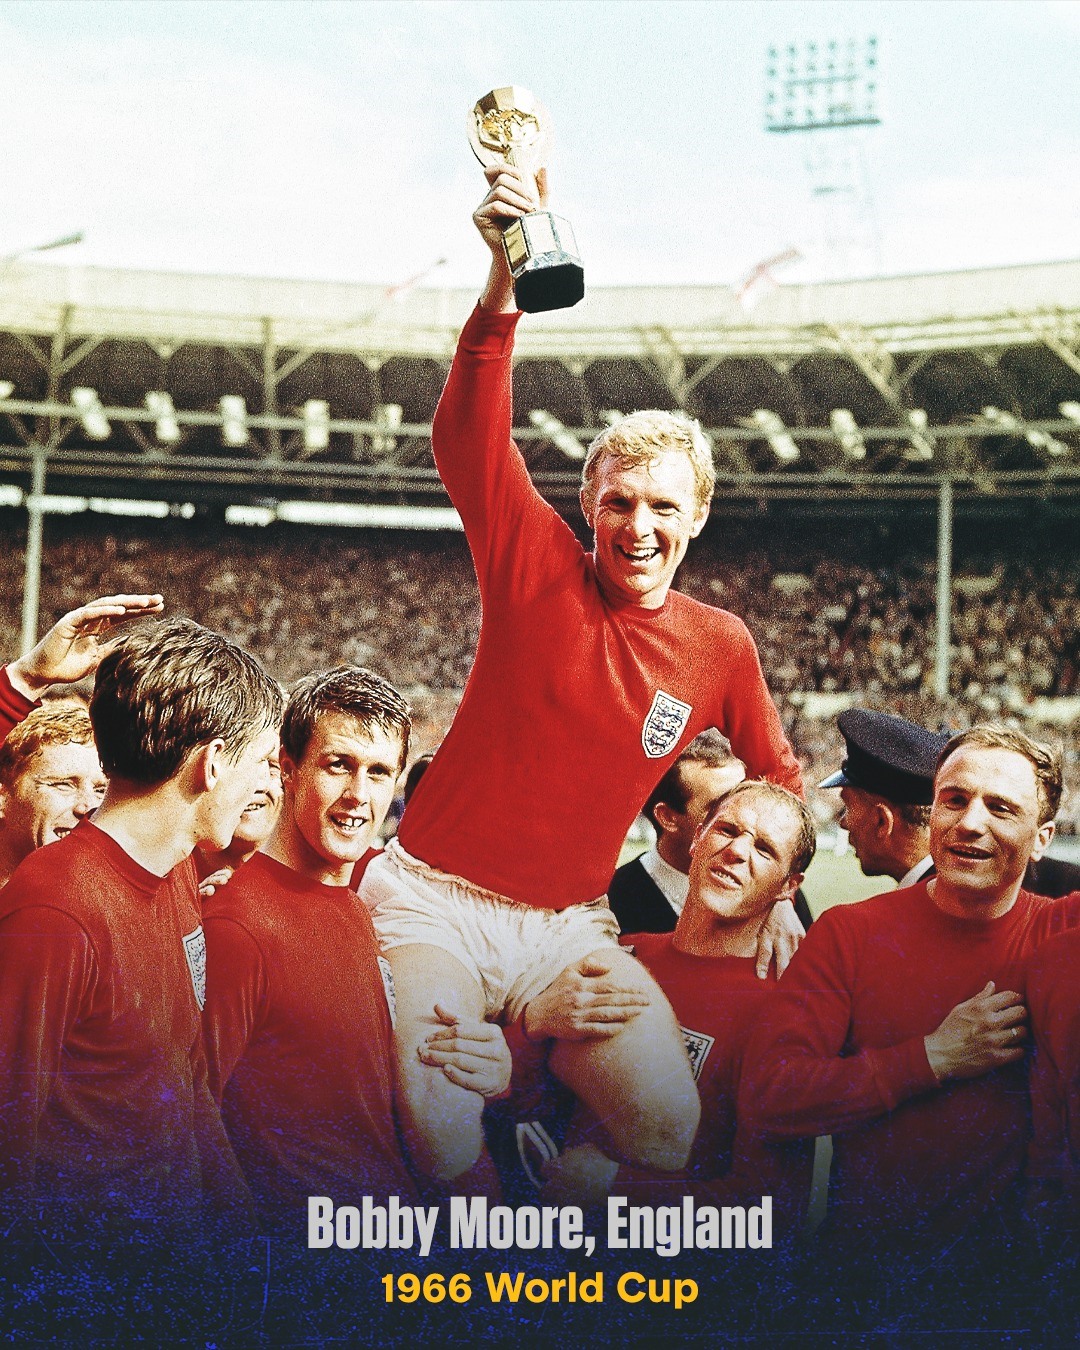 Đội trưởng Booby Moore của tuyển Anh nâng cao chiếc cúp vàng tại World Cup 1966 trên sân nhà. Ở trận chung kết, tuyển Anh đã thắng Tây Đức 4-2 sau hiệp phụ. Đến nay đó vẫn danh hiệu lớn duy nhất của Tam Sư.